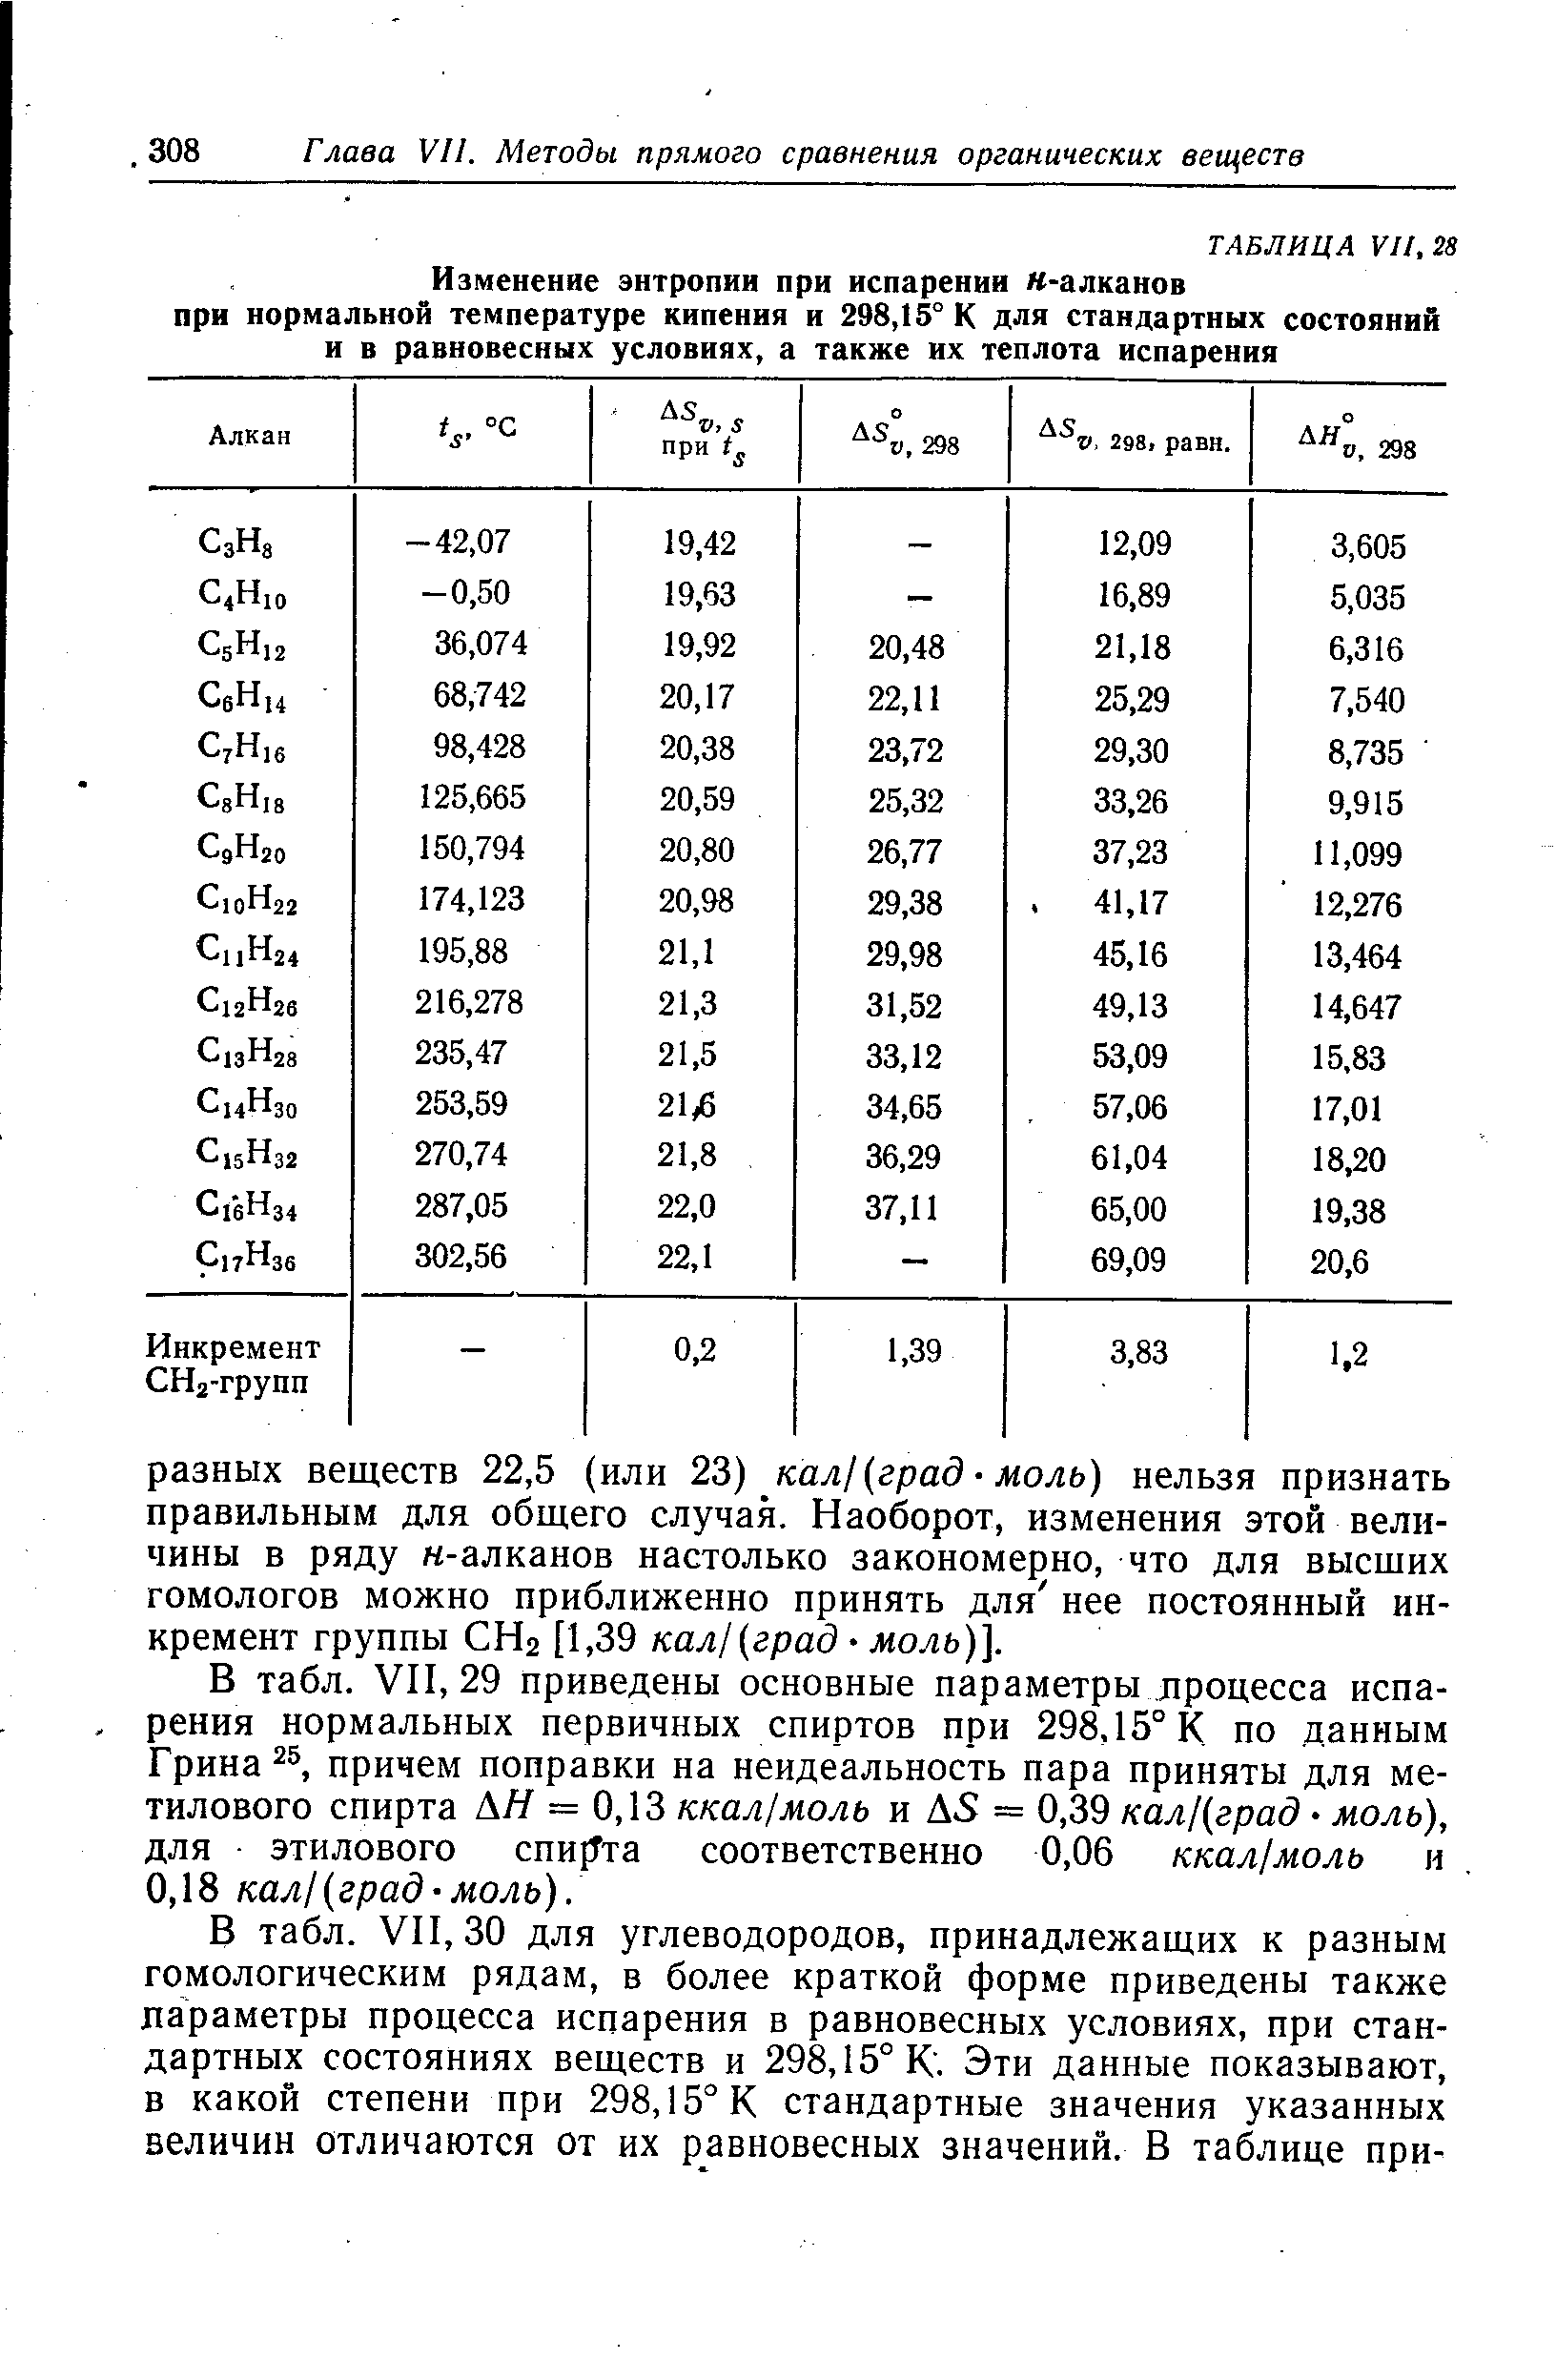 В табл. УП, 29 приведены основные параметры процесса испарения нормальных первичных спиртов при 298,15° К по данным Грина причем поправки на неидеальность пара приняты для метилового спирта АЯ = 0,13 ккал моль и Д5 = 0,39 кал (град моль), для этилового спи Тта соответственно 0,06 ккал моль и 0,18 кал (град моль).